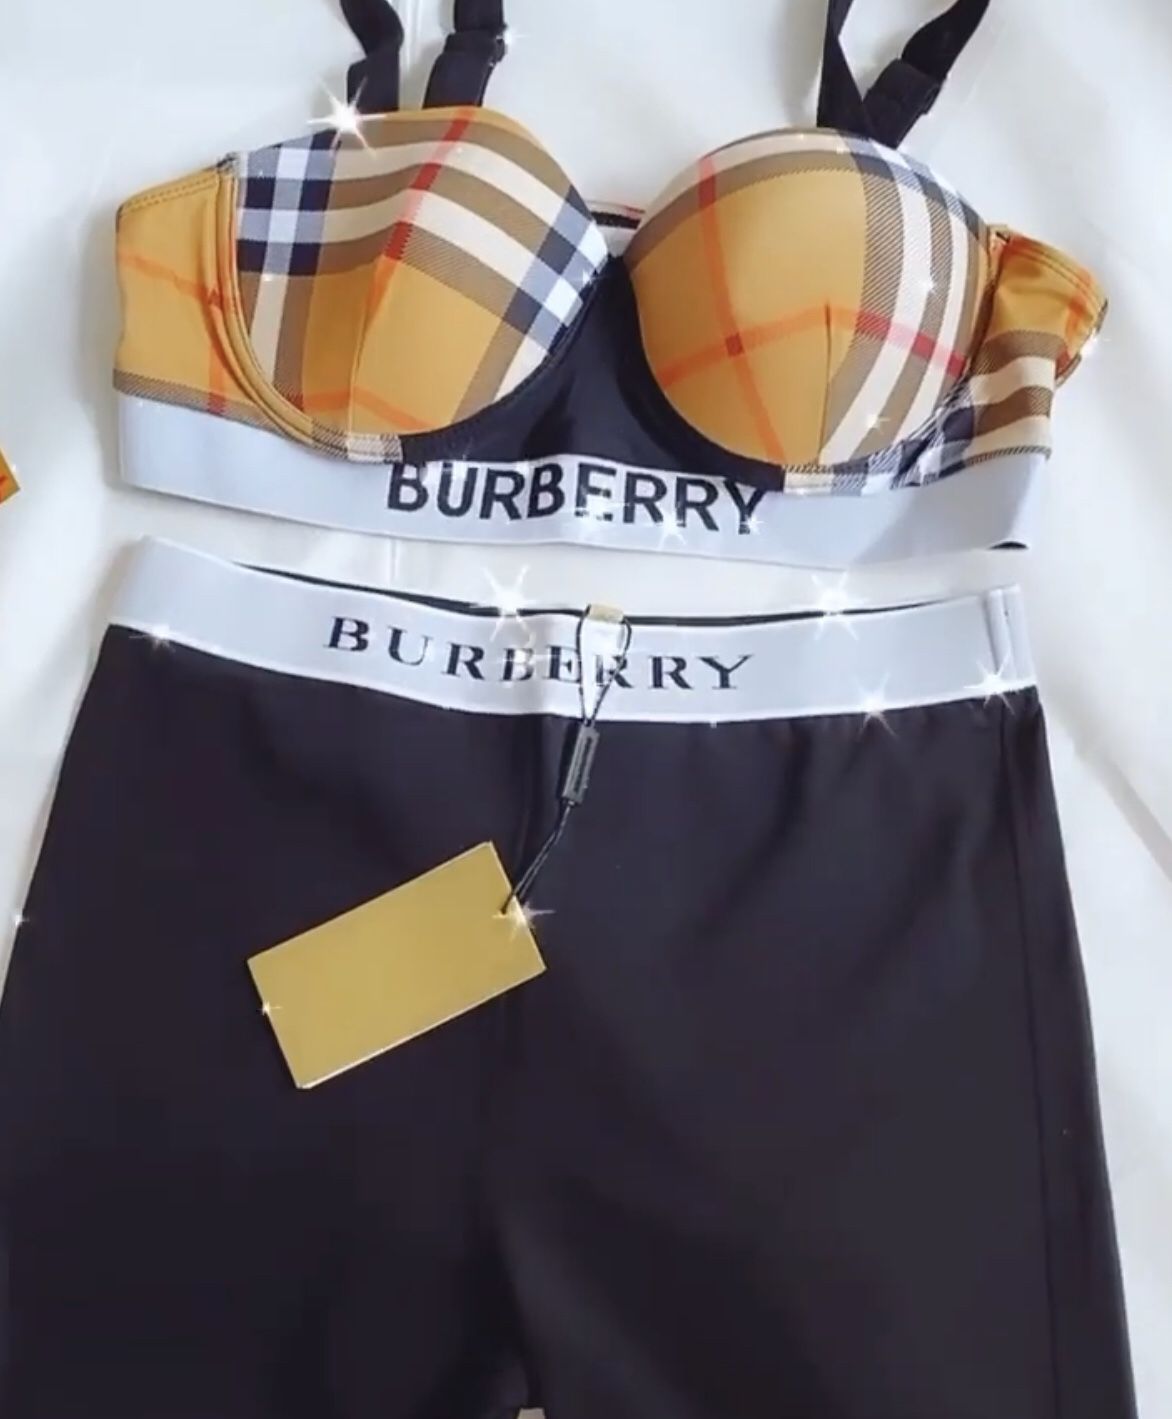 Burberry set Burberry bra Burberry shorts a set